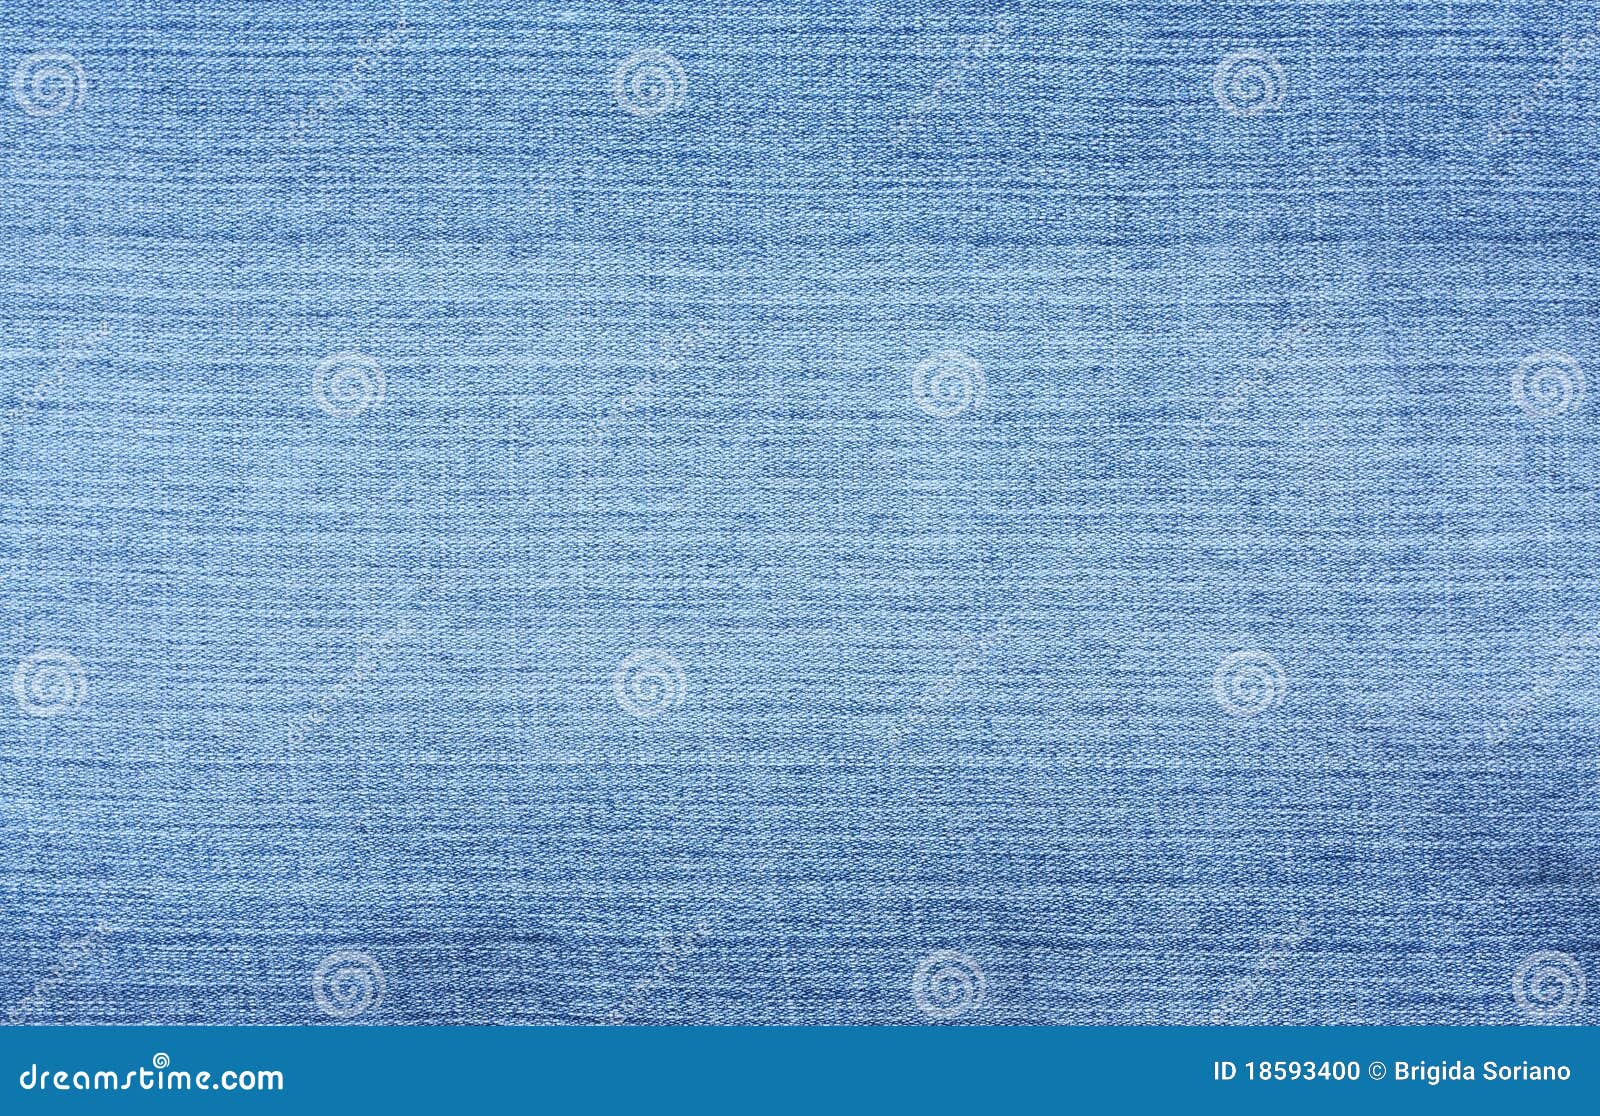 blue denim textured background